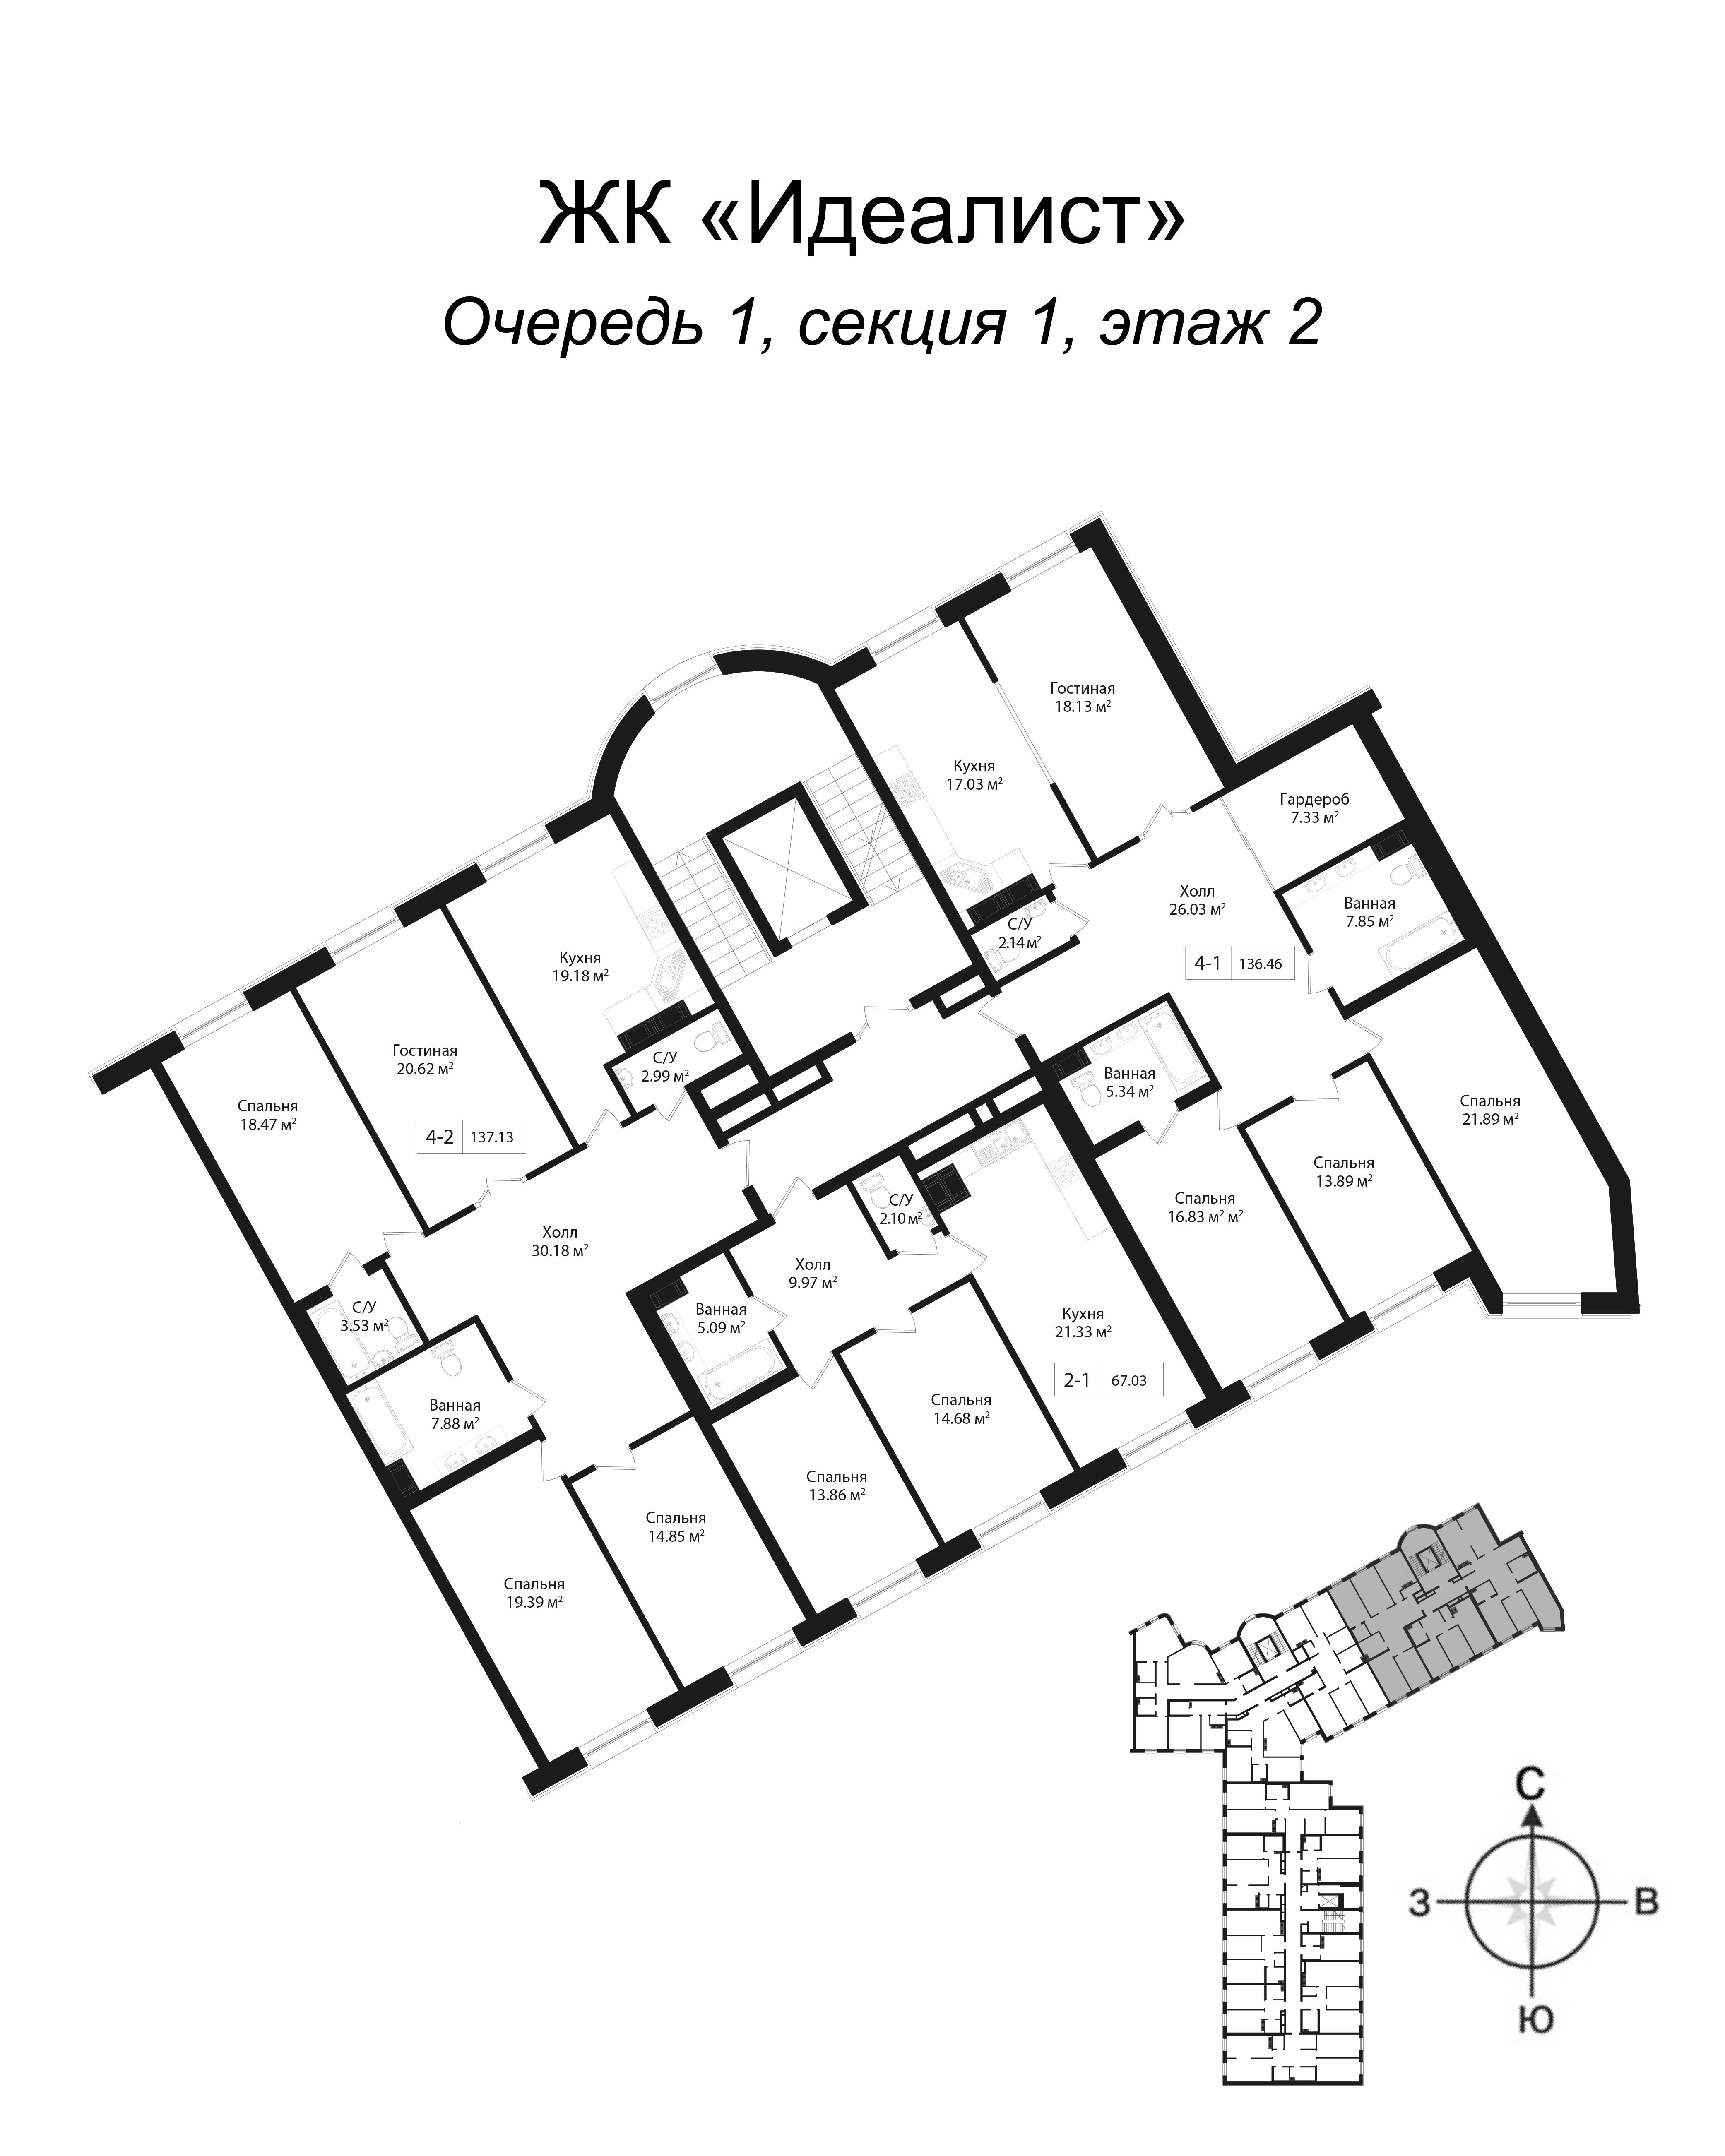 4-комнатная квартира, 138.4 м² в ЖК "Идеалист" - планировка этажа